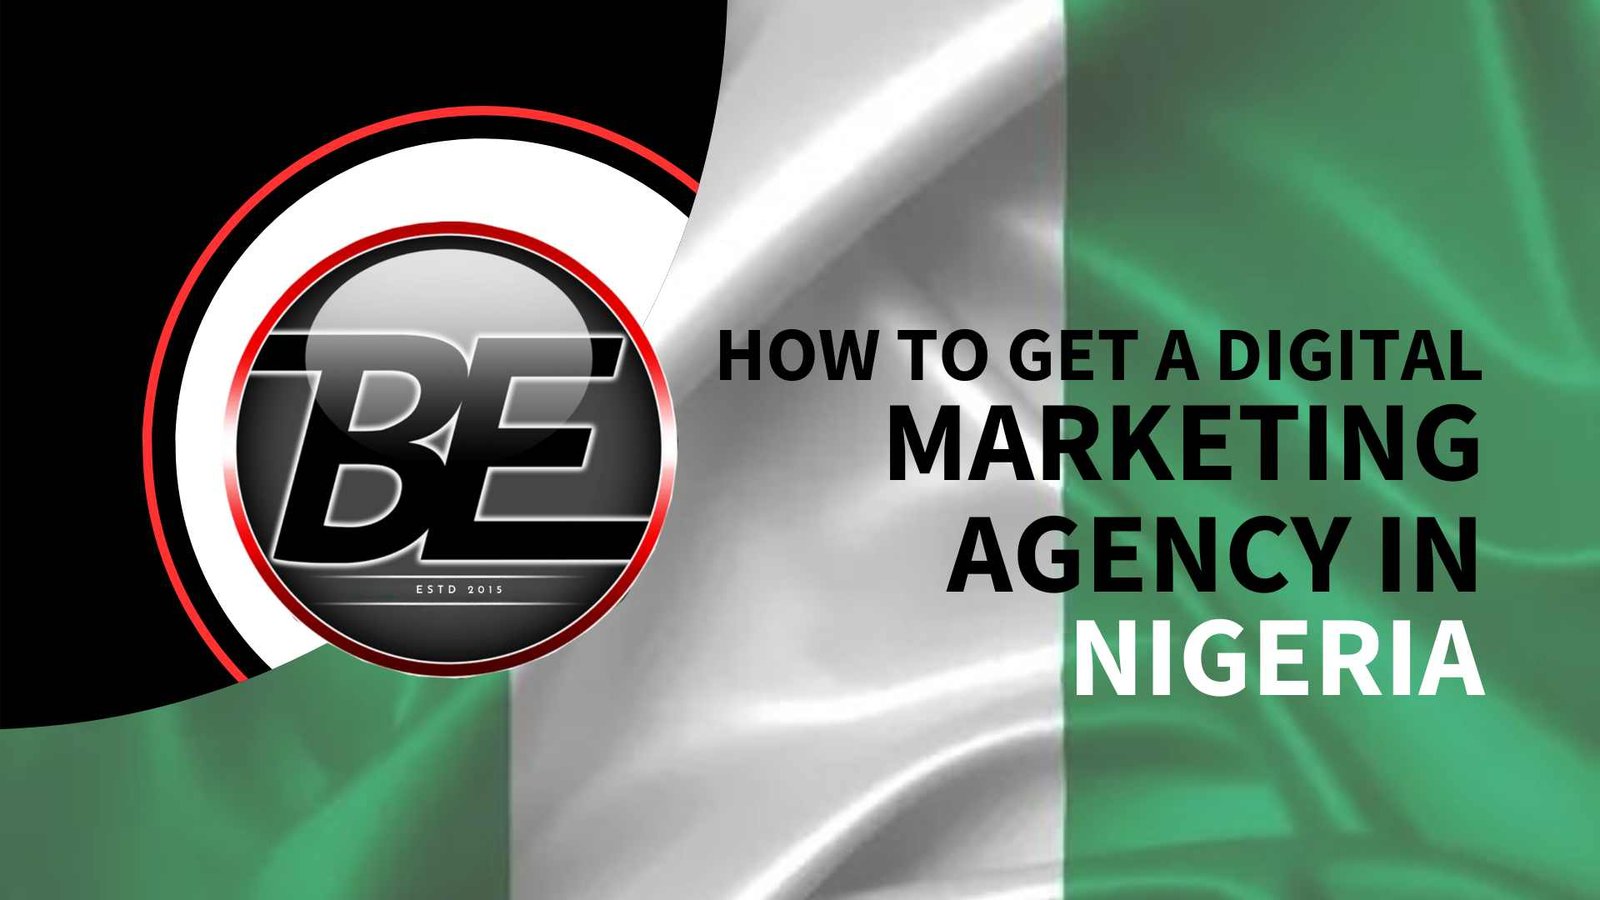 Digital Marketing Agency in Nigeria